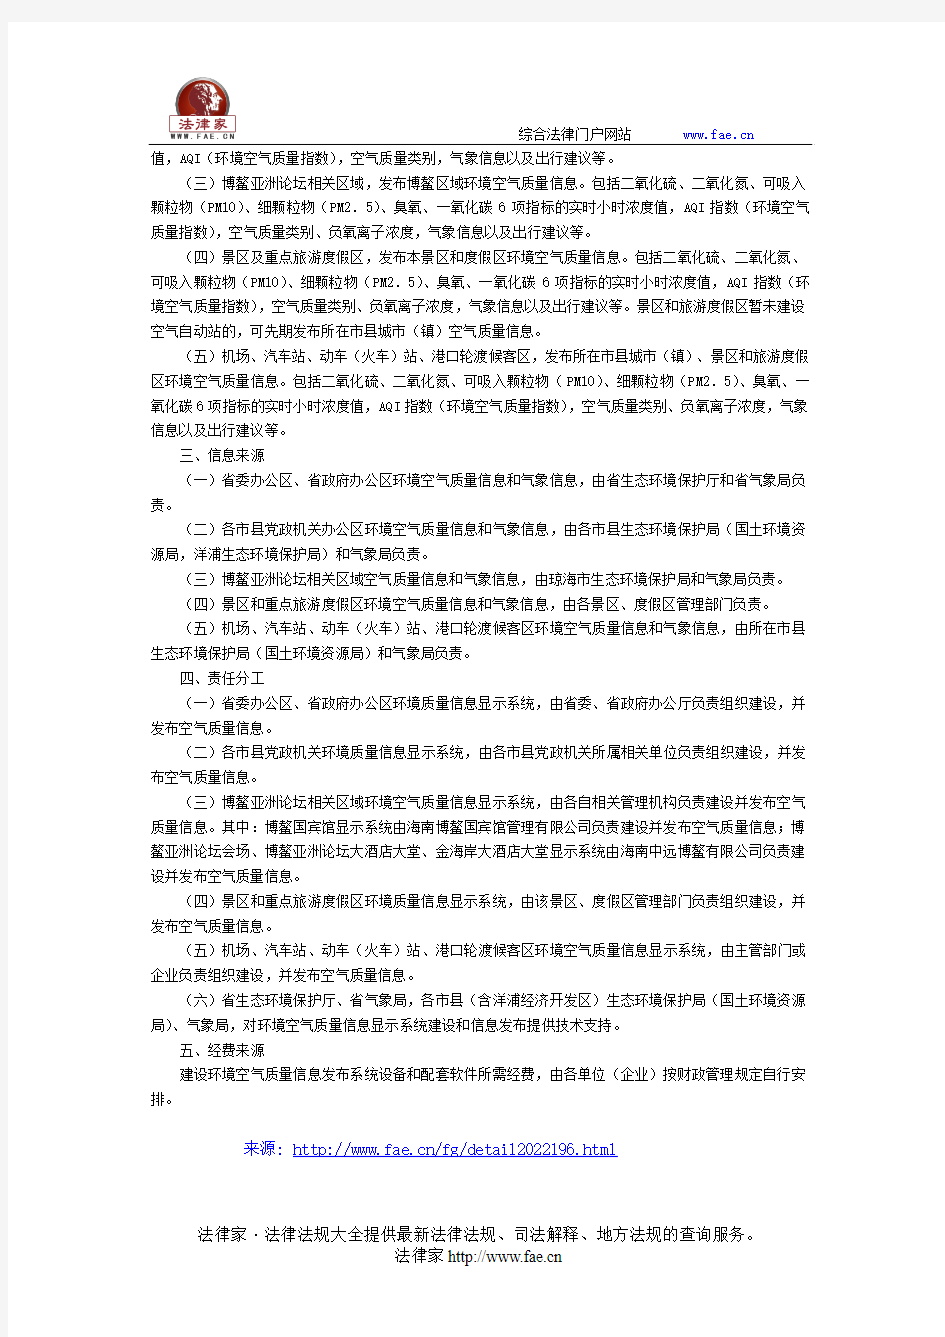 海南省人民政府办公厅关于印发海南省环境空气质量信息发布建设方案的通知-地方规范性文件